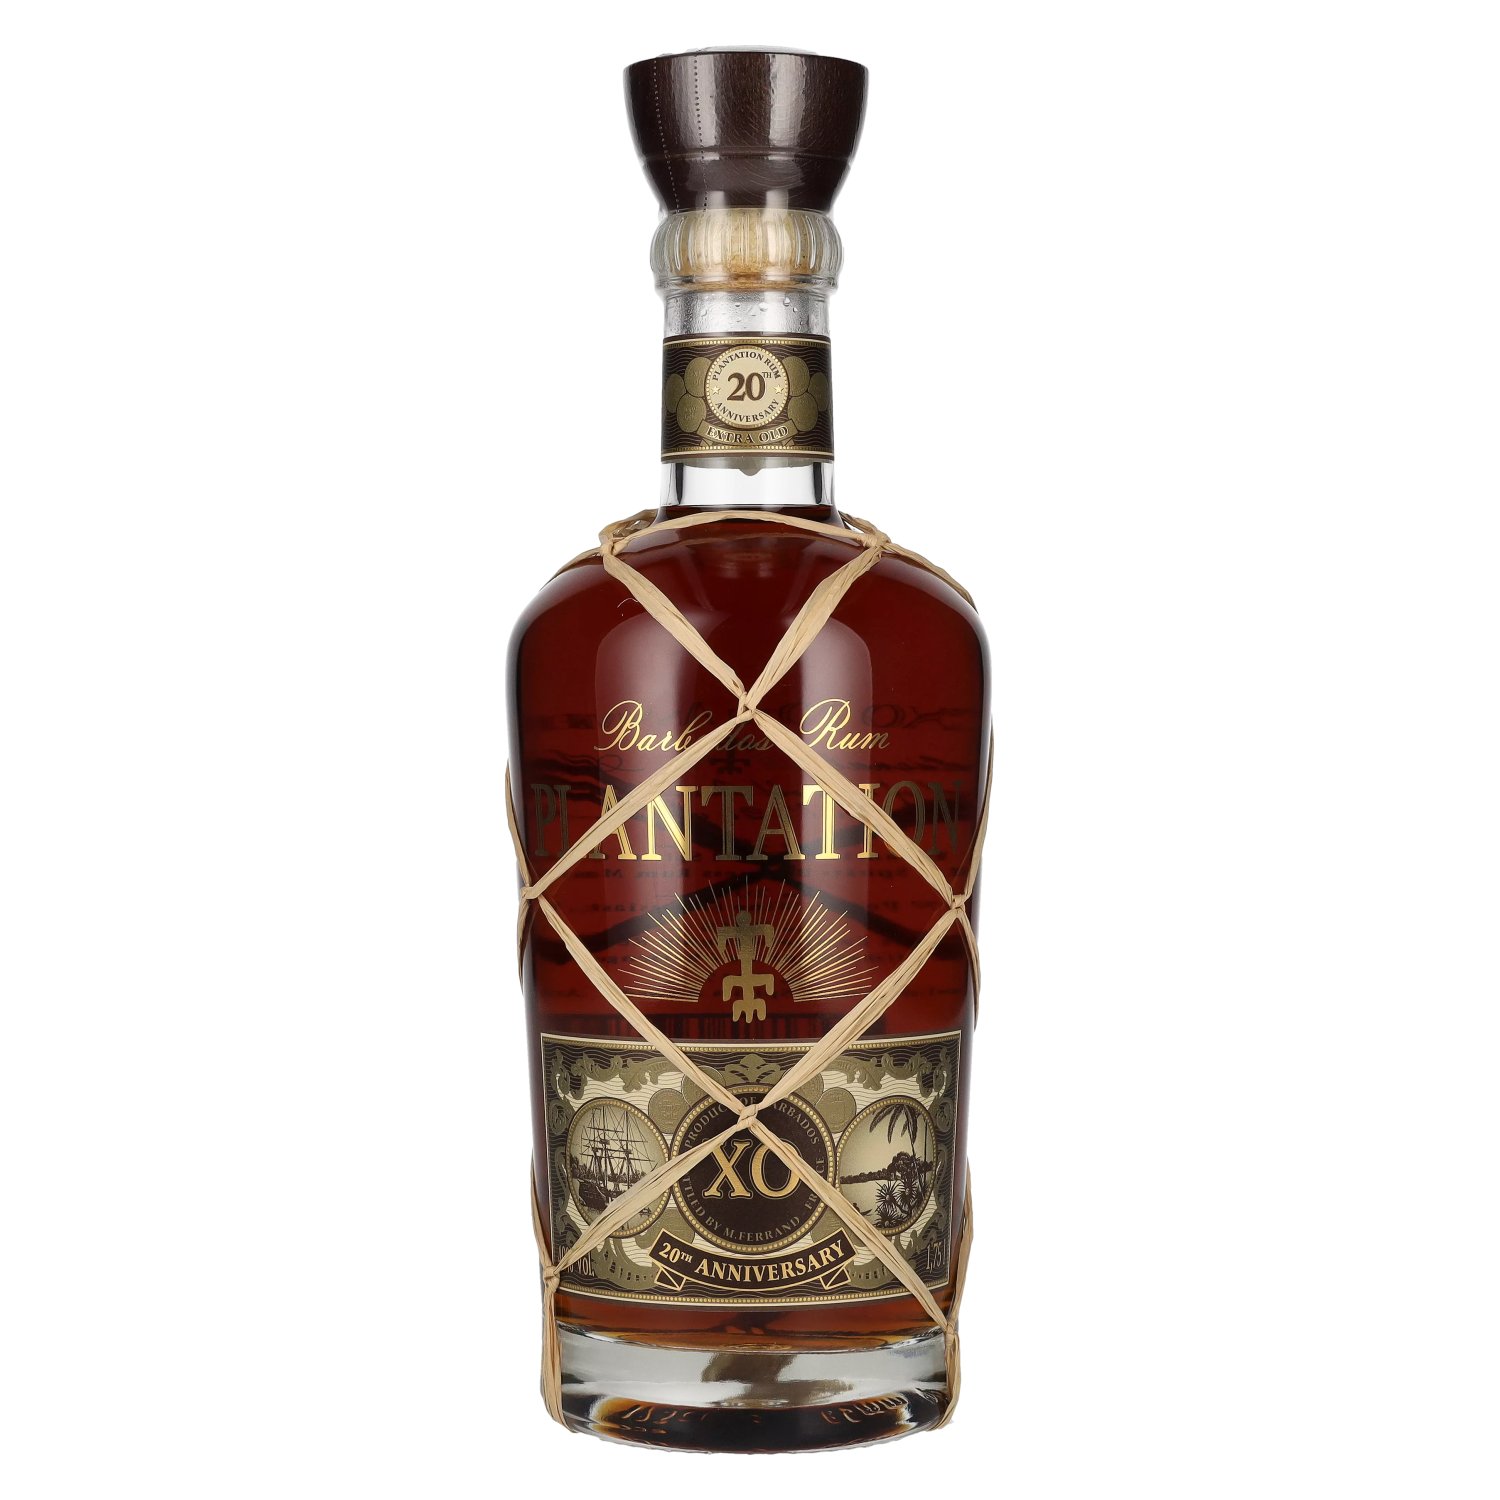 Plantation Rum BARBADOS Vol. XO Anniversary 20th 40% 1,75l